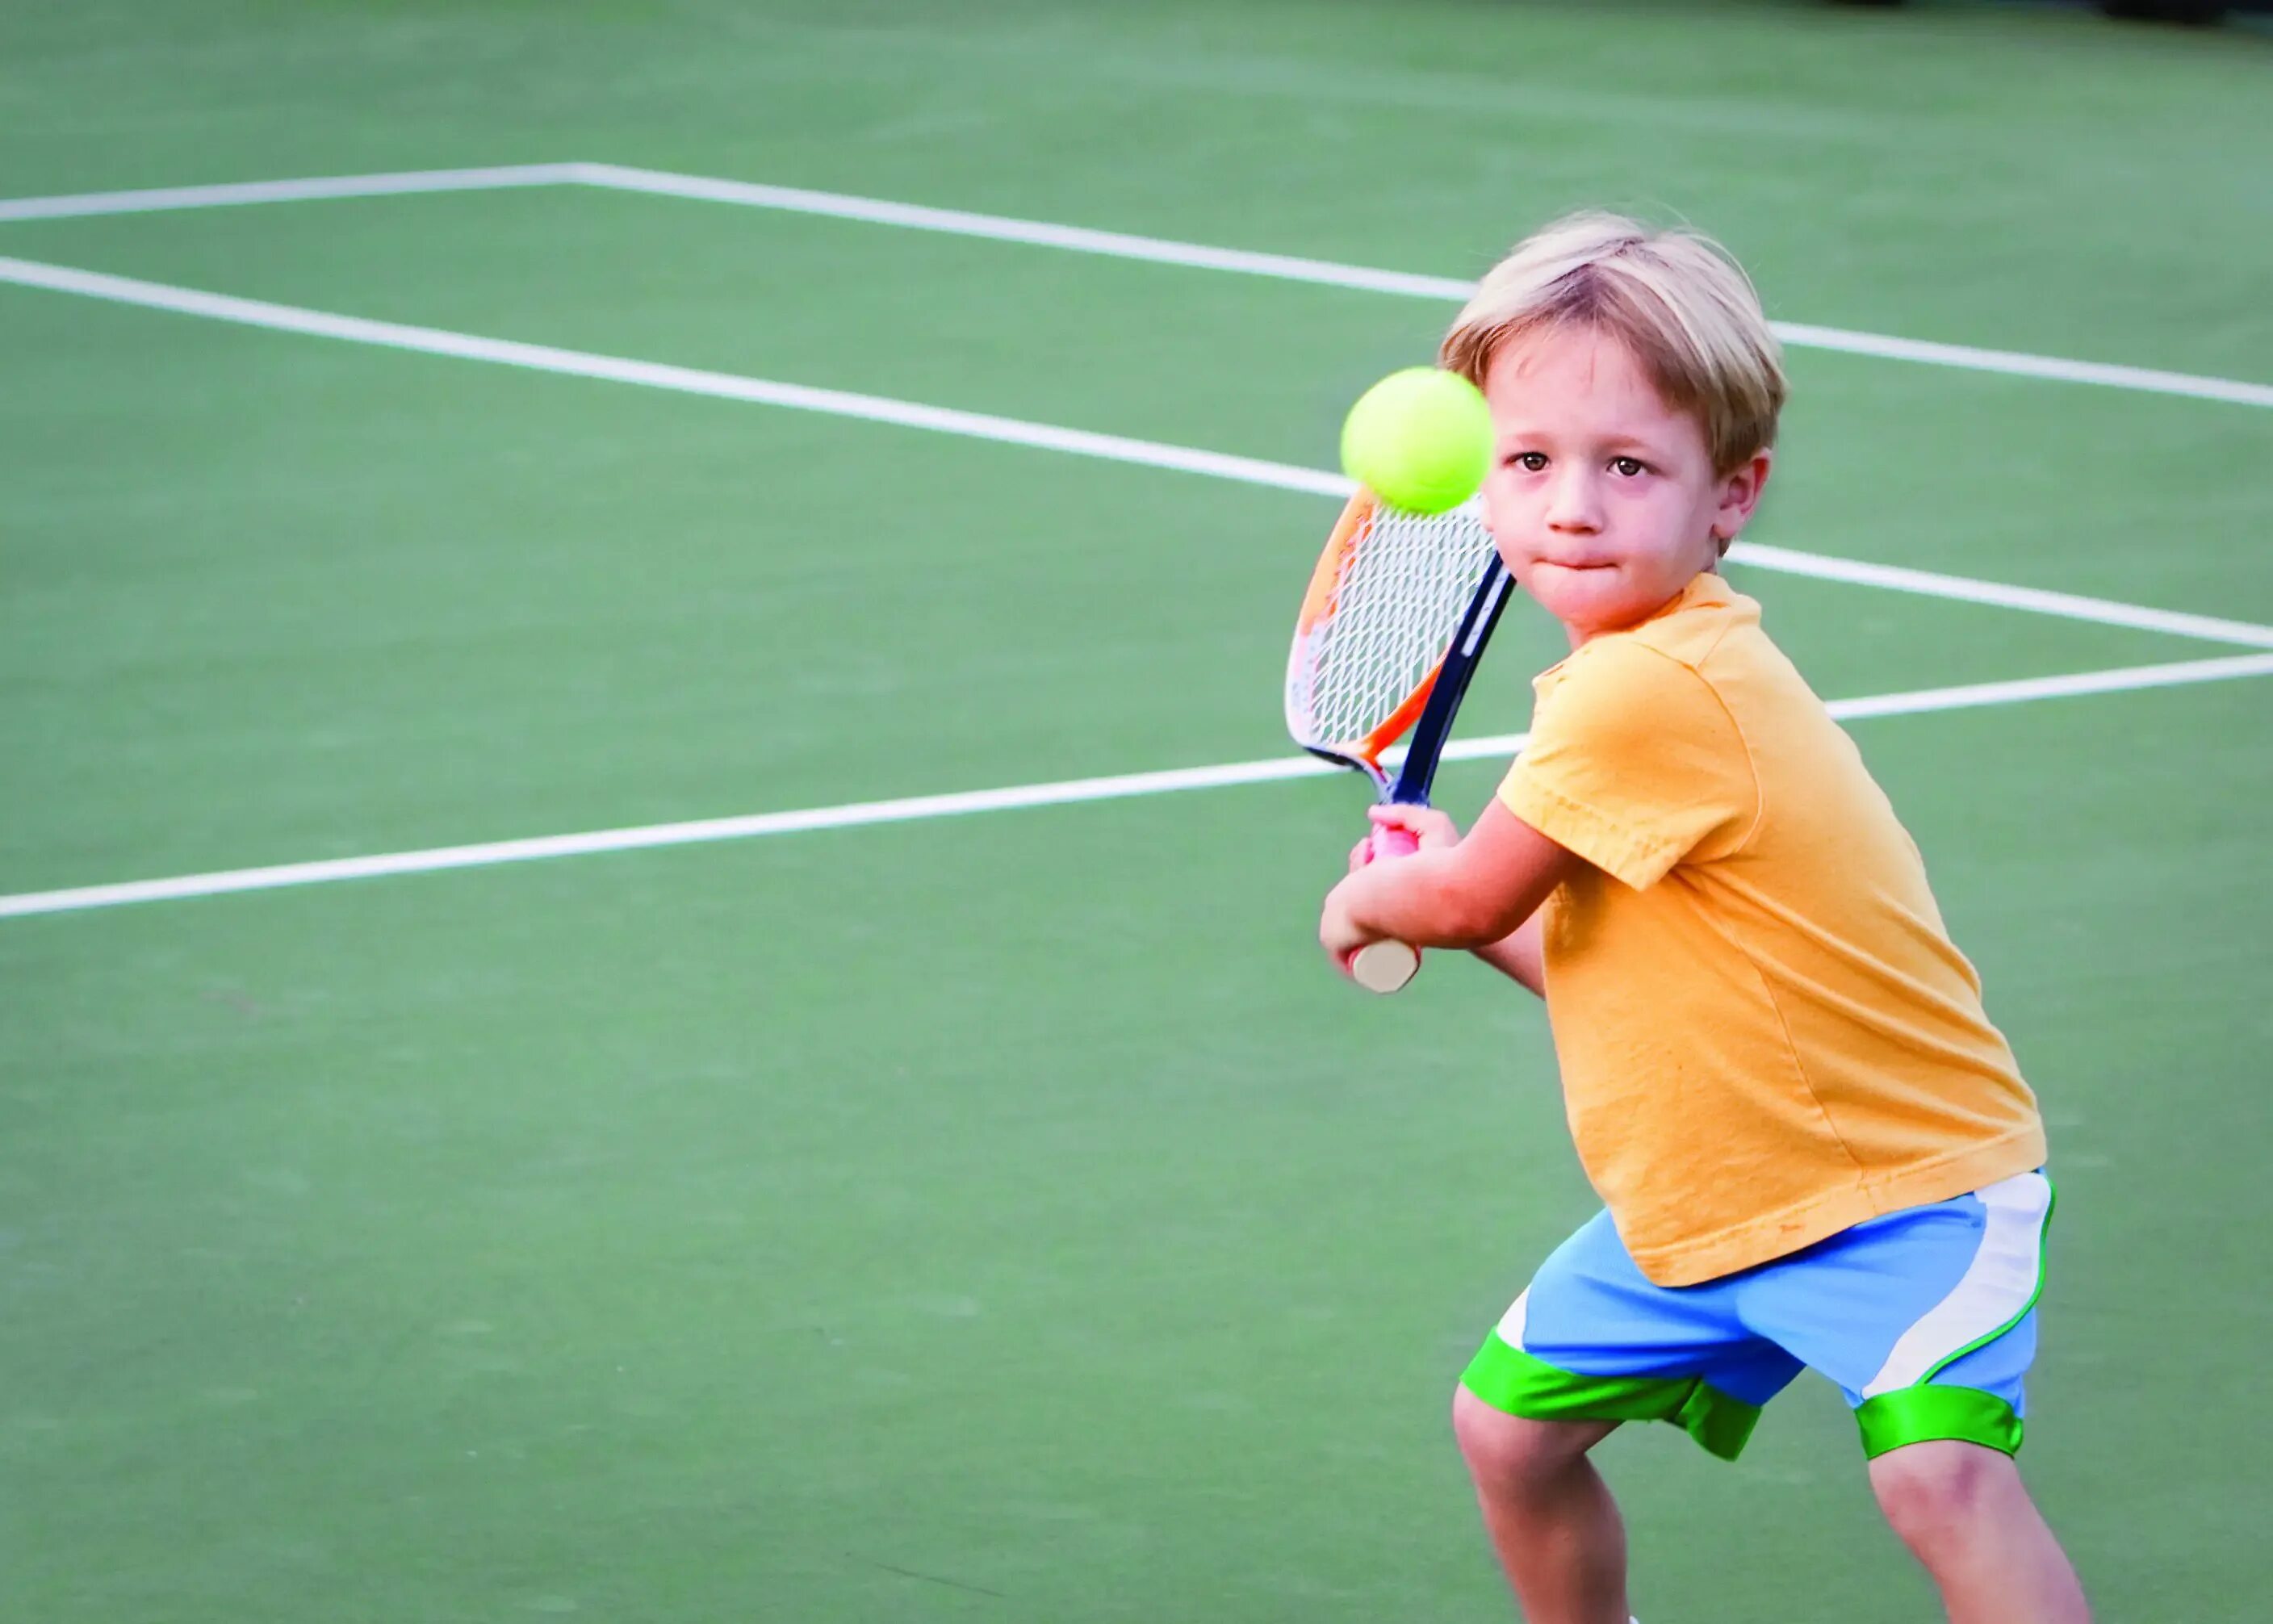 Do you enjoy playing sports. Теннис дети. Детский большой теннис. Большой теннис дети. Ребенок с ракеткой.